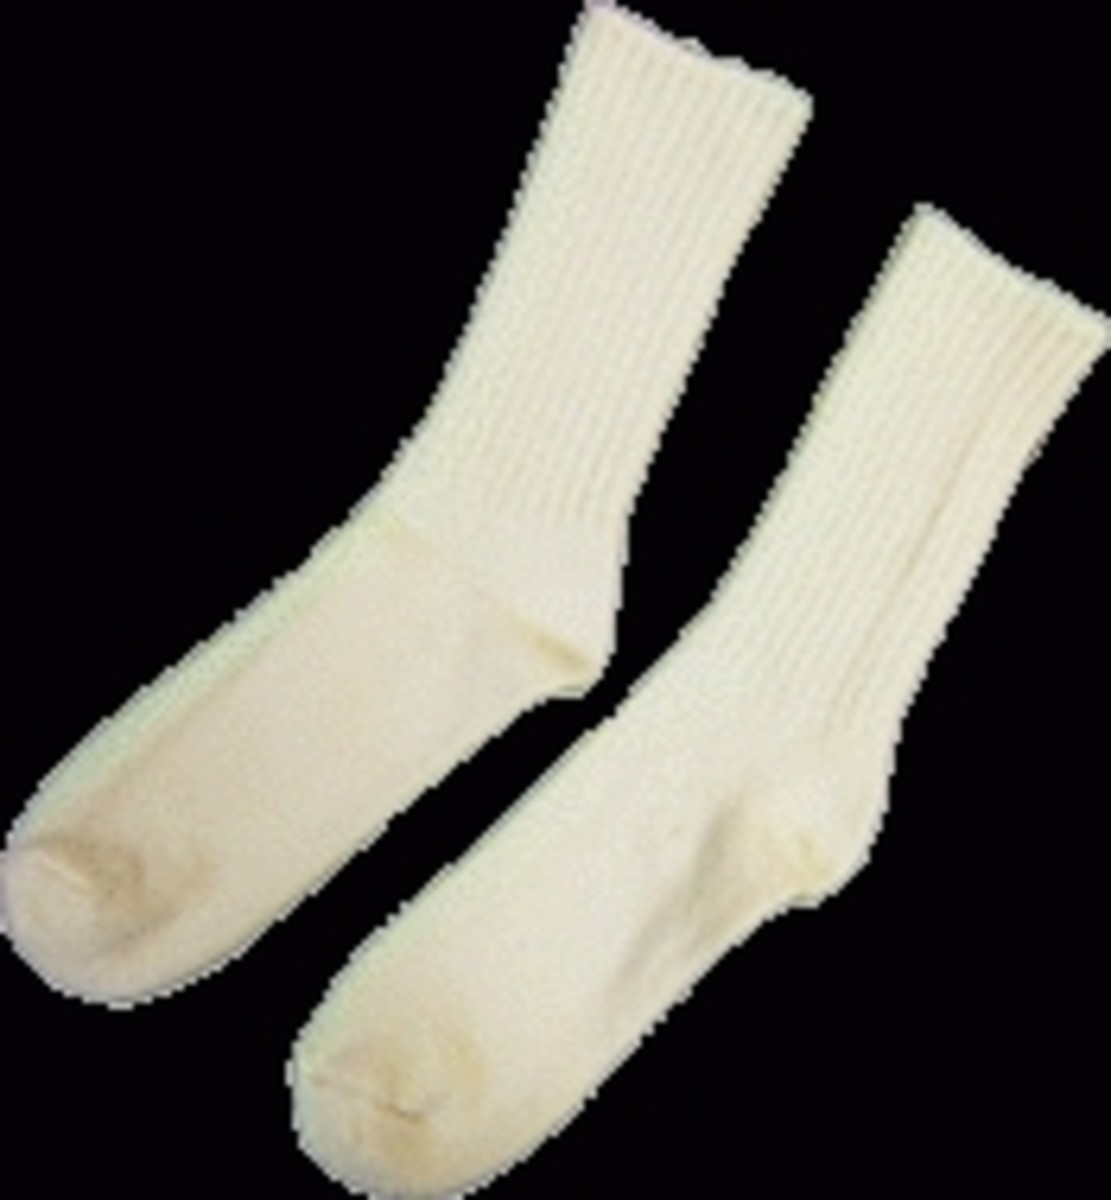 Fig. 3: Wool Socks